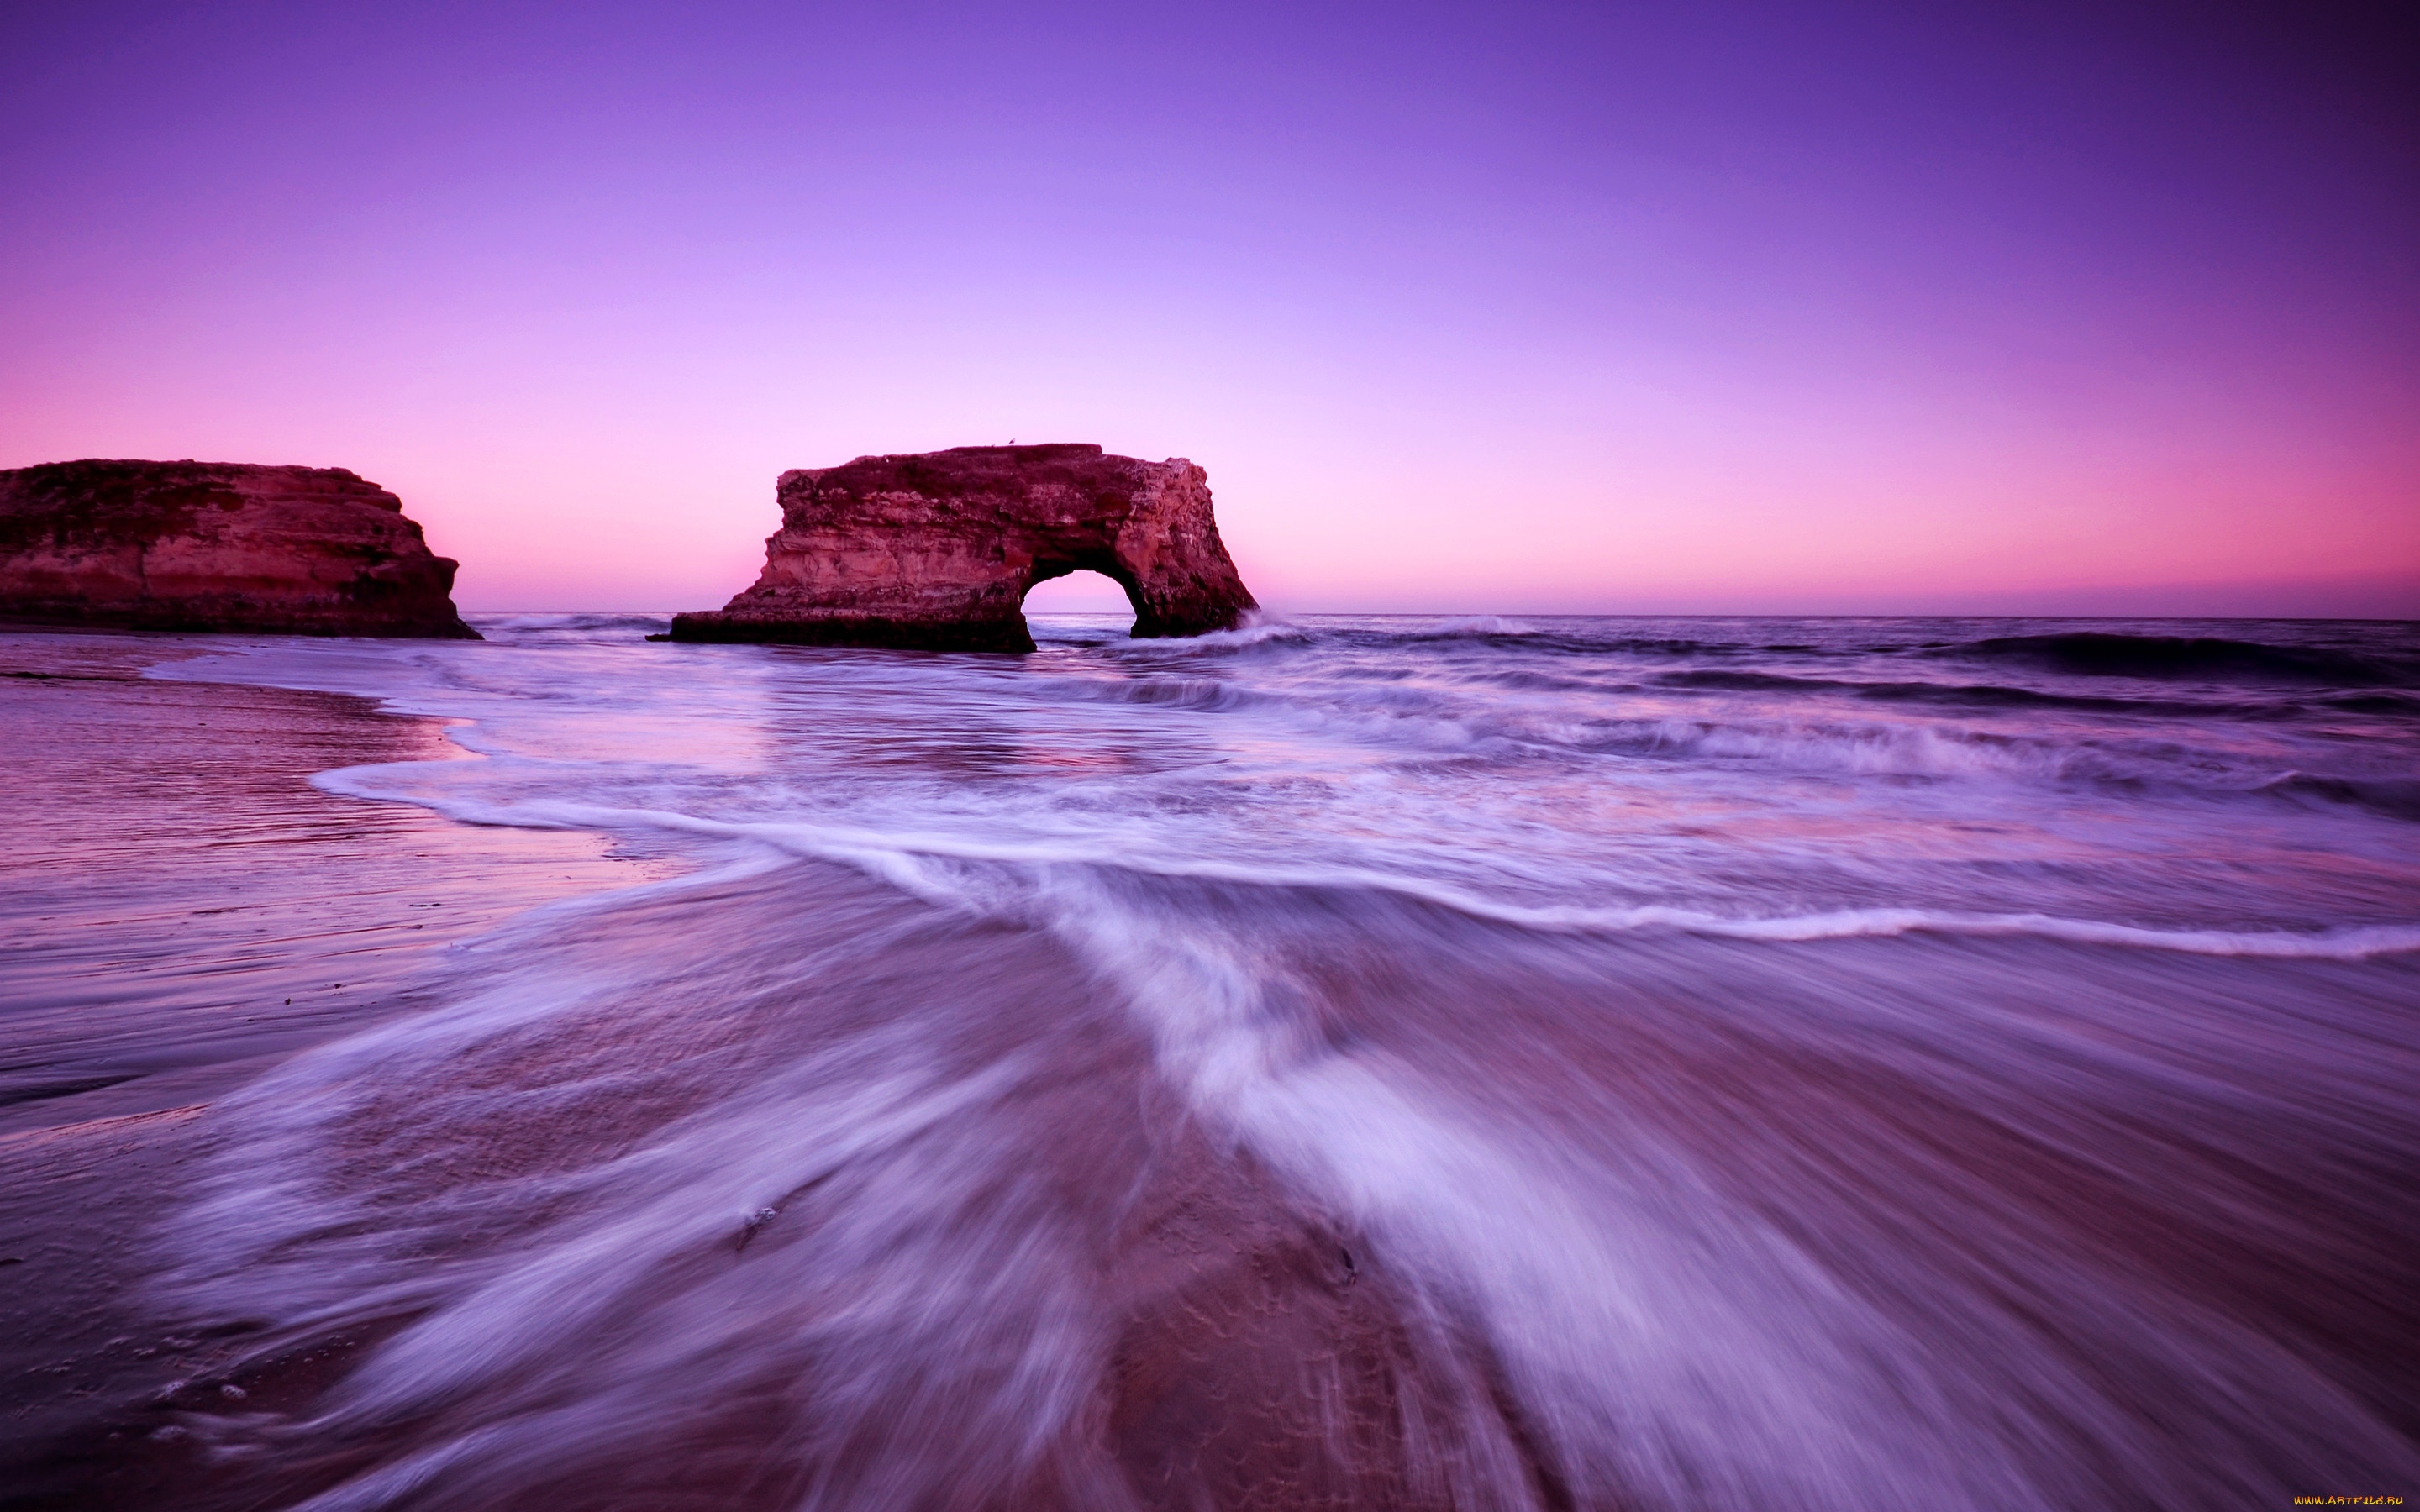 Картинки на обои. Природа море. Пейзаж море. Фиолетовый пляж. Красивая природа.